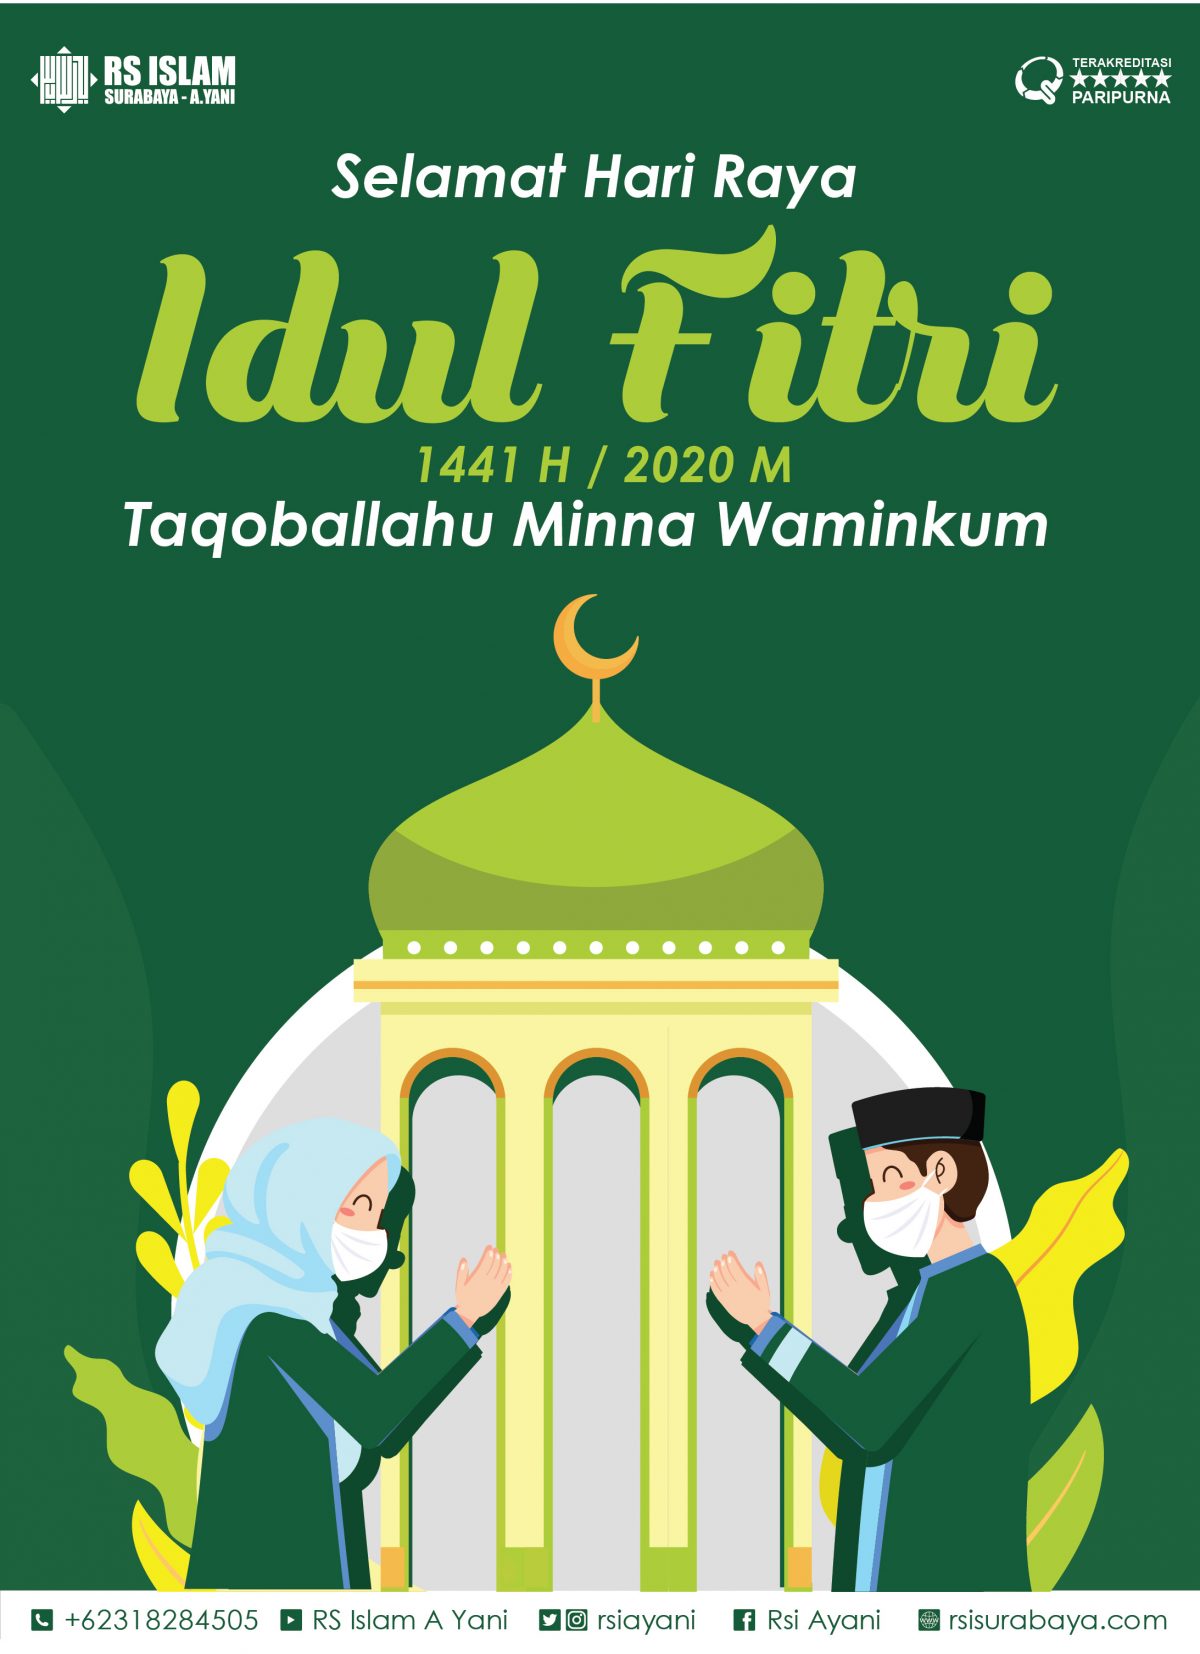 Selamat Hari Raya Idul Fitri – RS Islam Surabaya